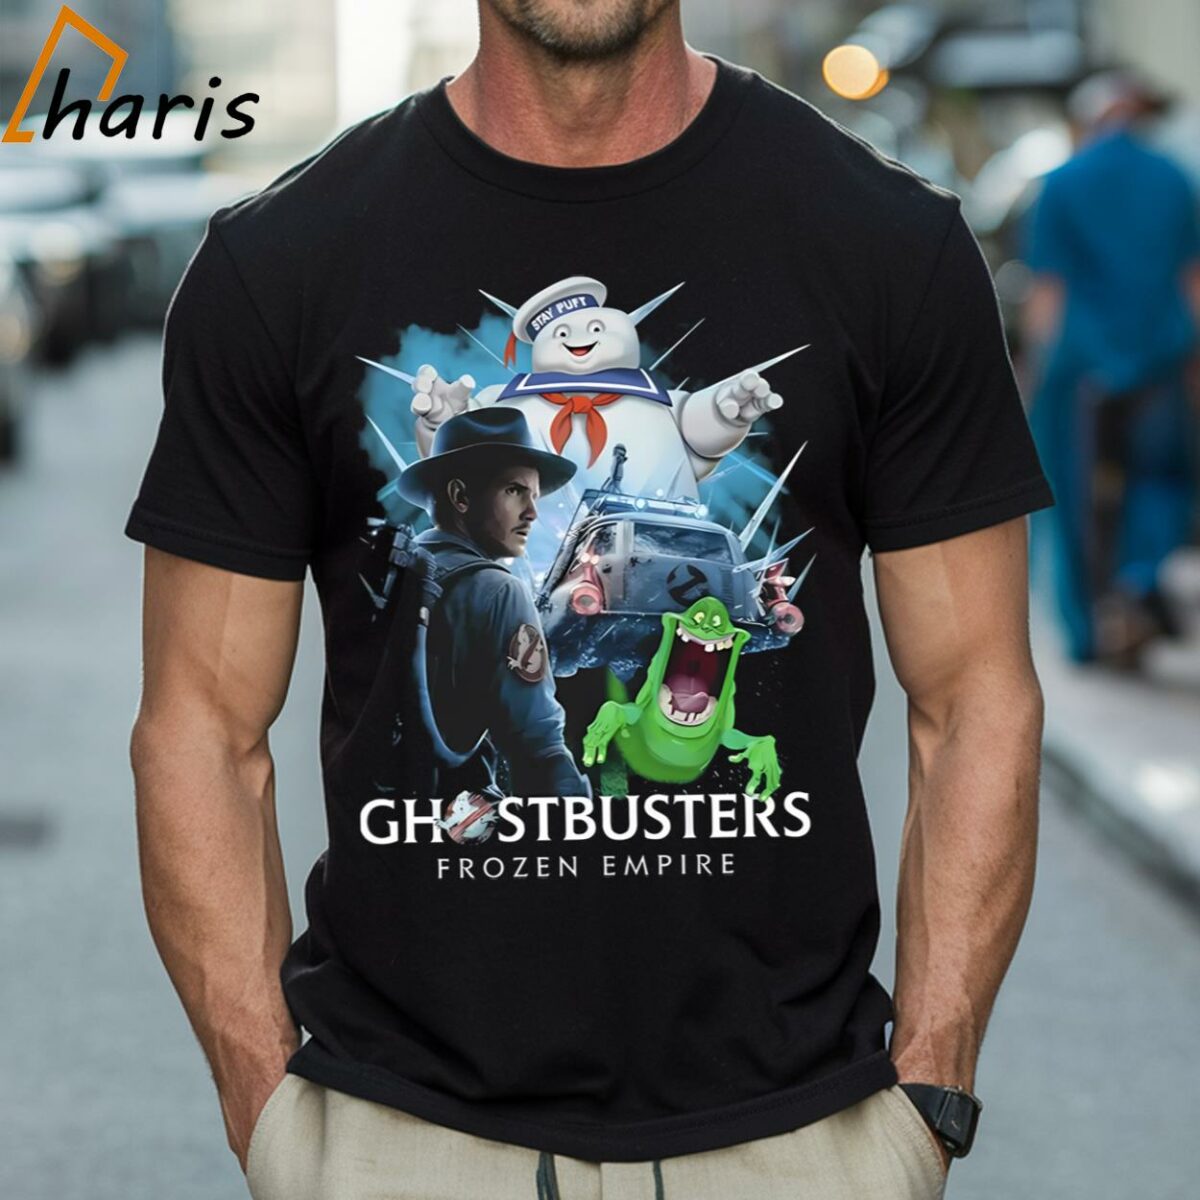 Ghostbusters Frozen Empire T shirt 1 Shirt